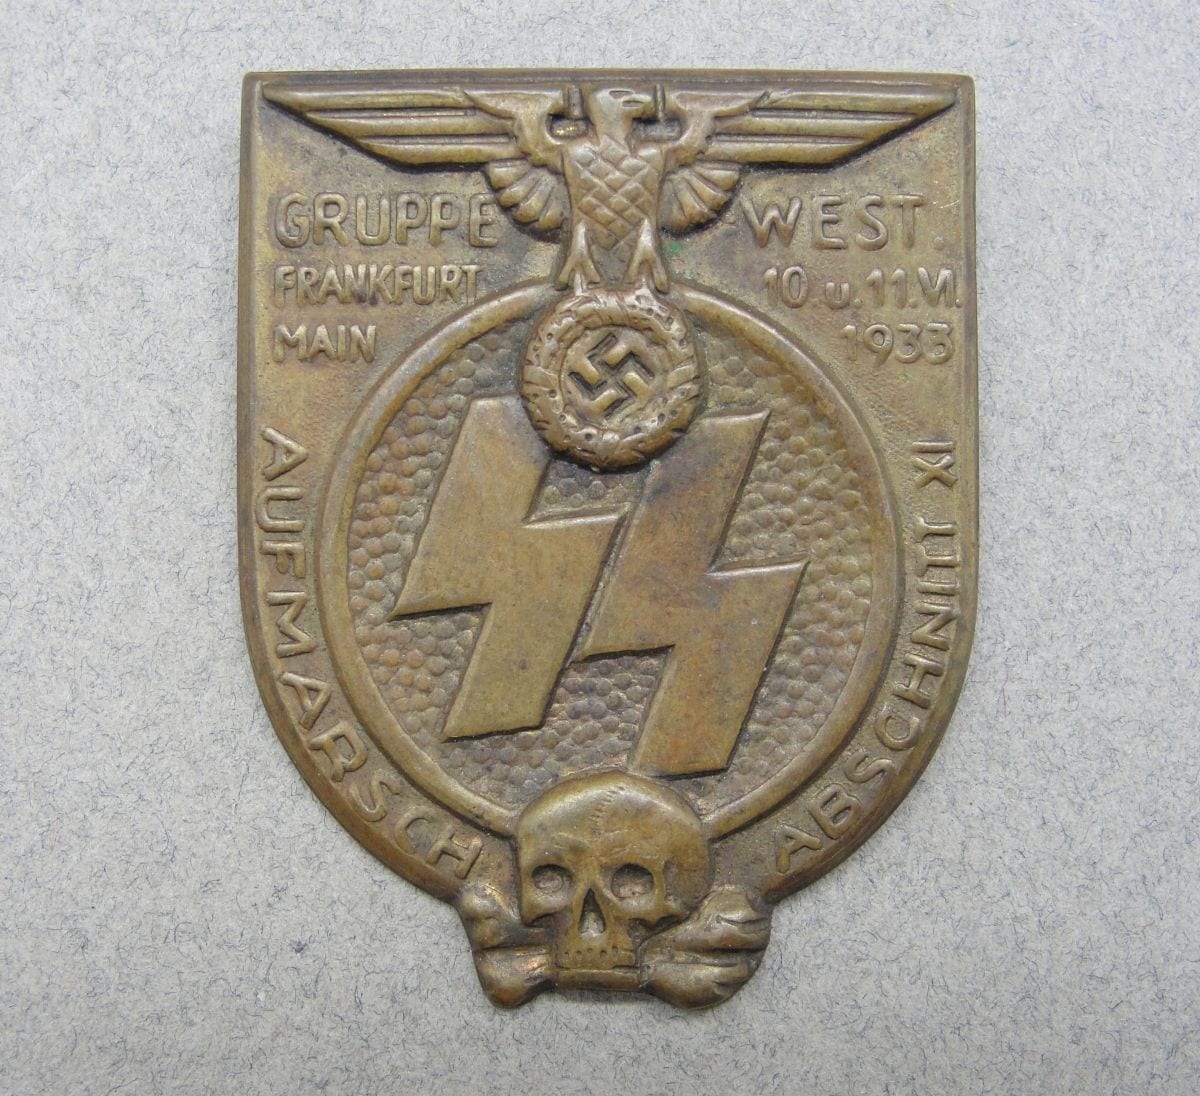 1933 SS "GRUPPE WEST FRANKFURT MAIN AUFMARSCH ABSCHNITT XI" Badge